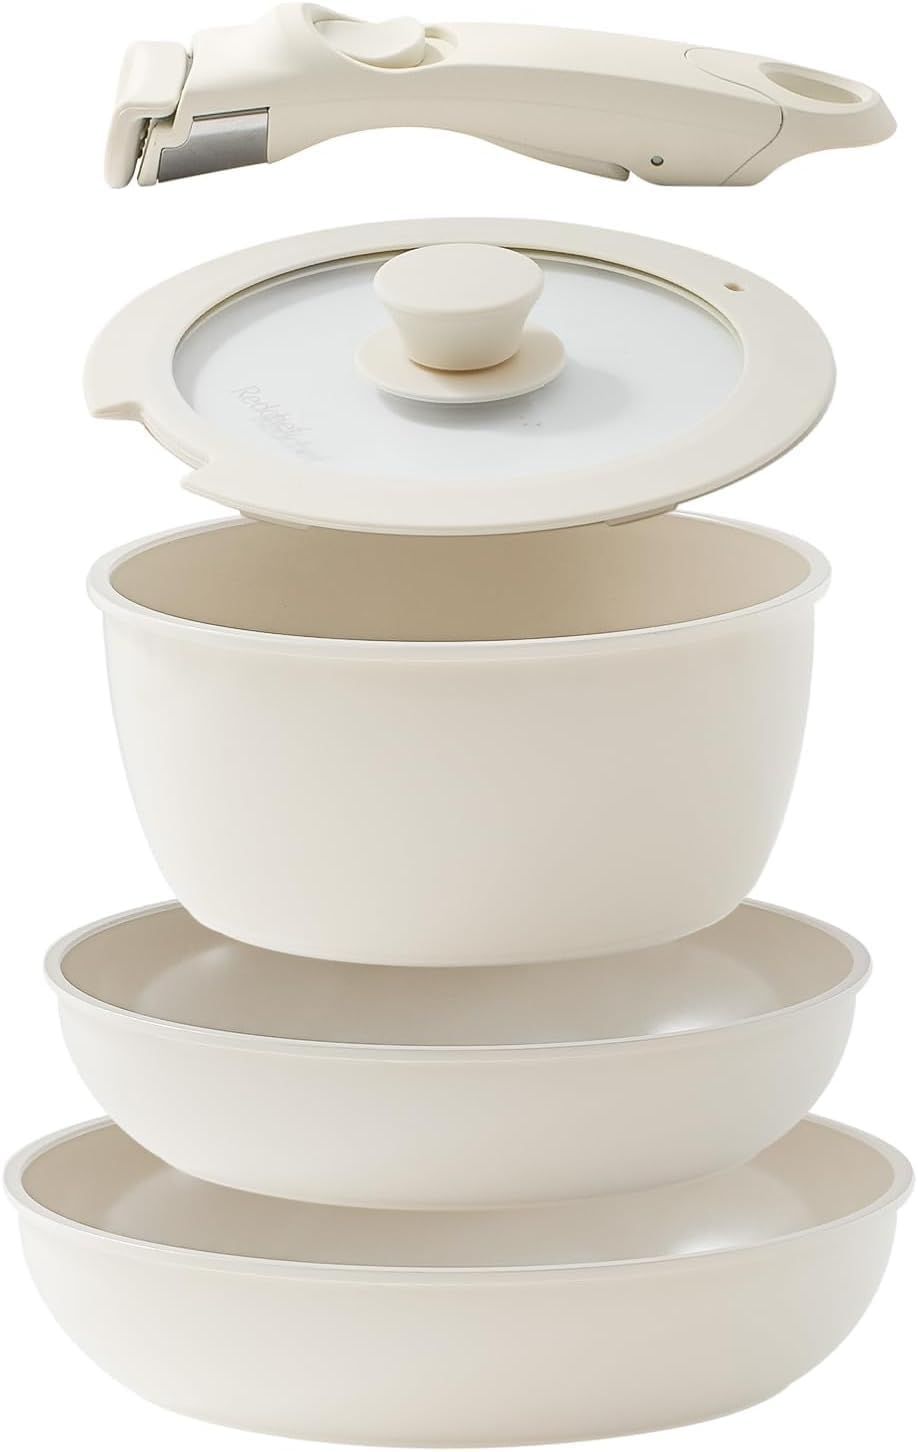 Ceramic Pots and Pans Set Non Stick, Nonstick Kitchen Cookware Sets, Non Toxic Pots and Pans Set ... | Amazon (US)